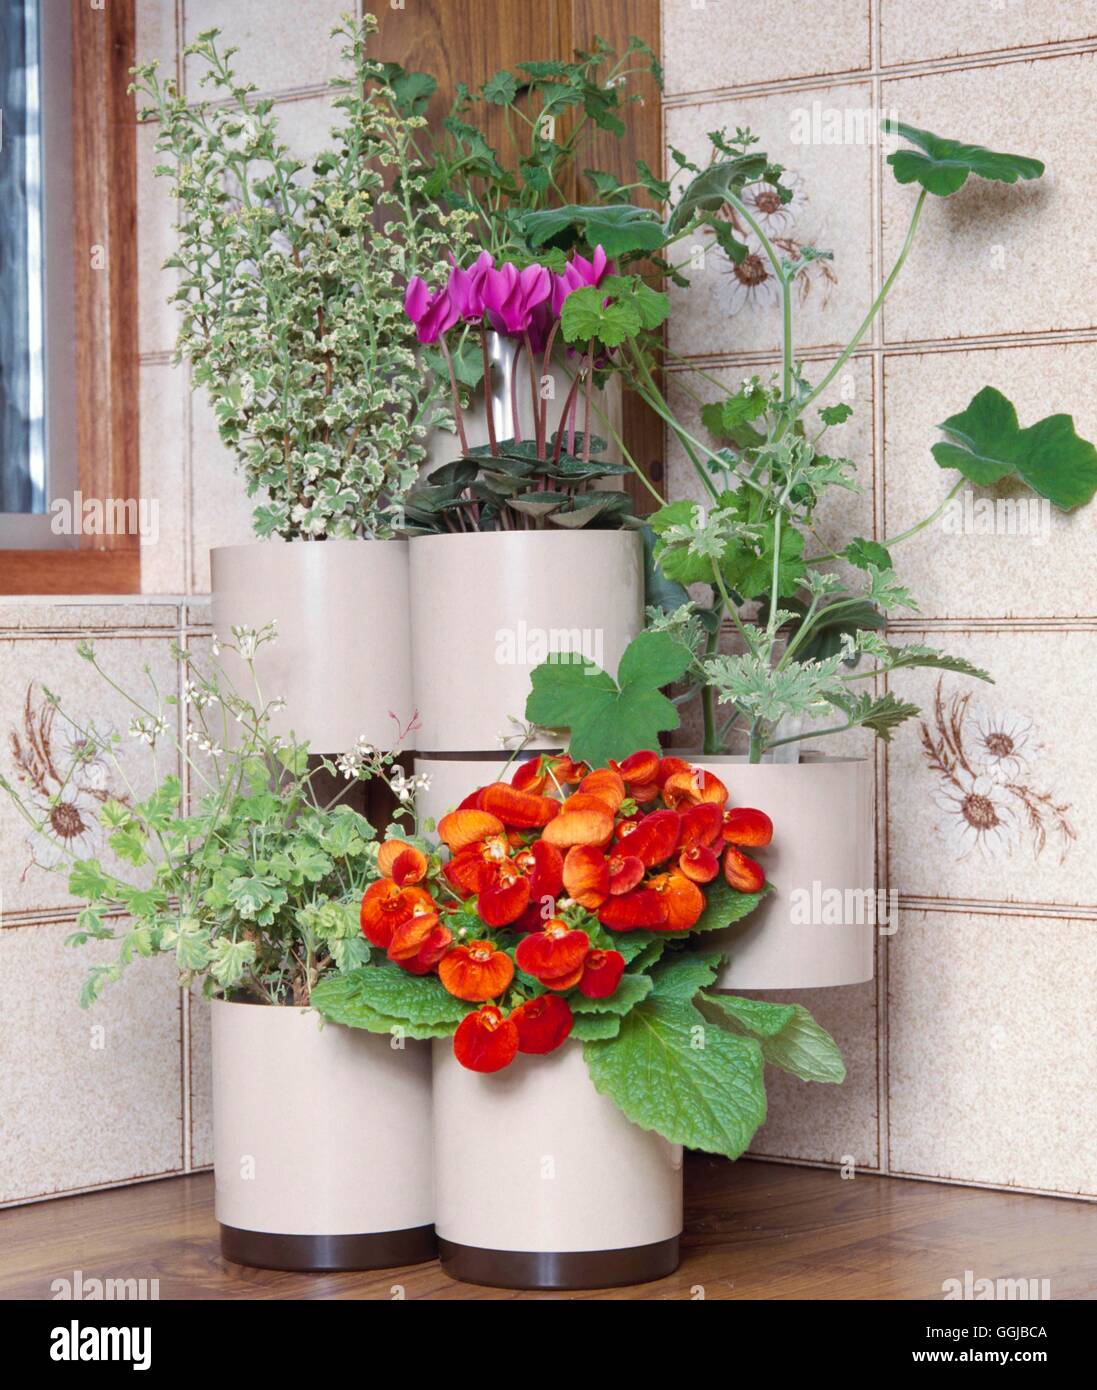 Les plantes d'appartement In Situ - Cuisine - Cyclamen le Calceolaria et géraniums odorants pots moderne dans son obligatoire Cre040438 Banque D'Images